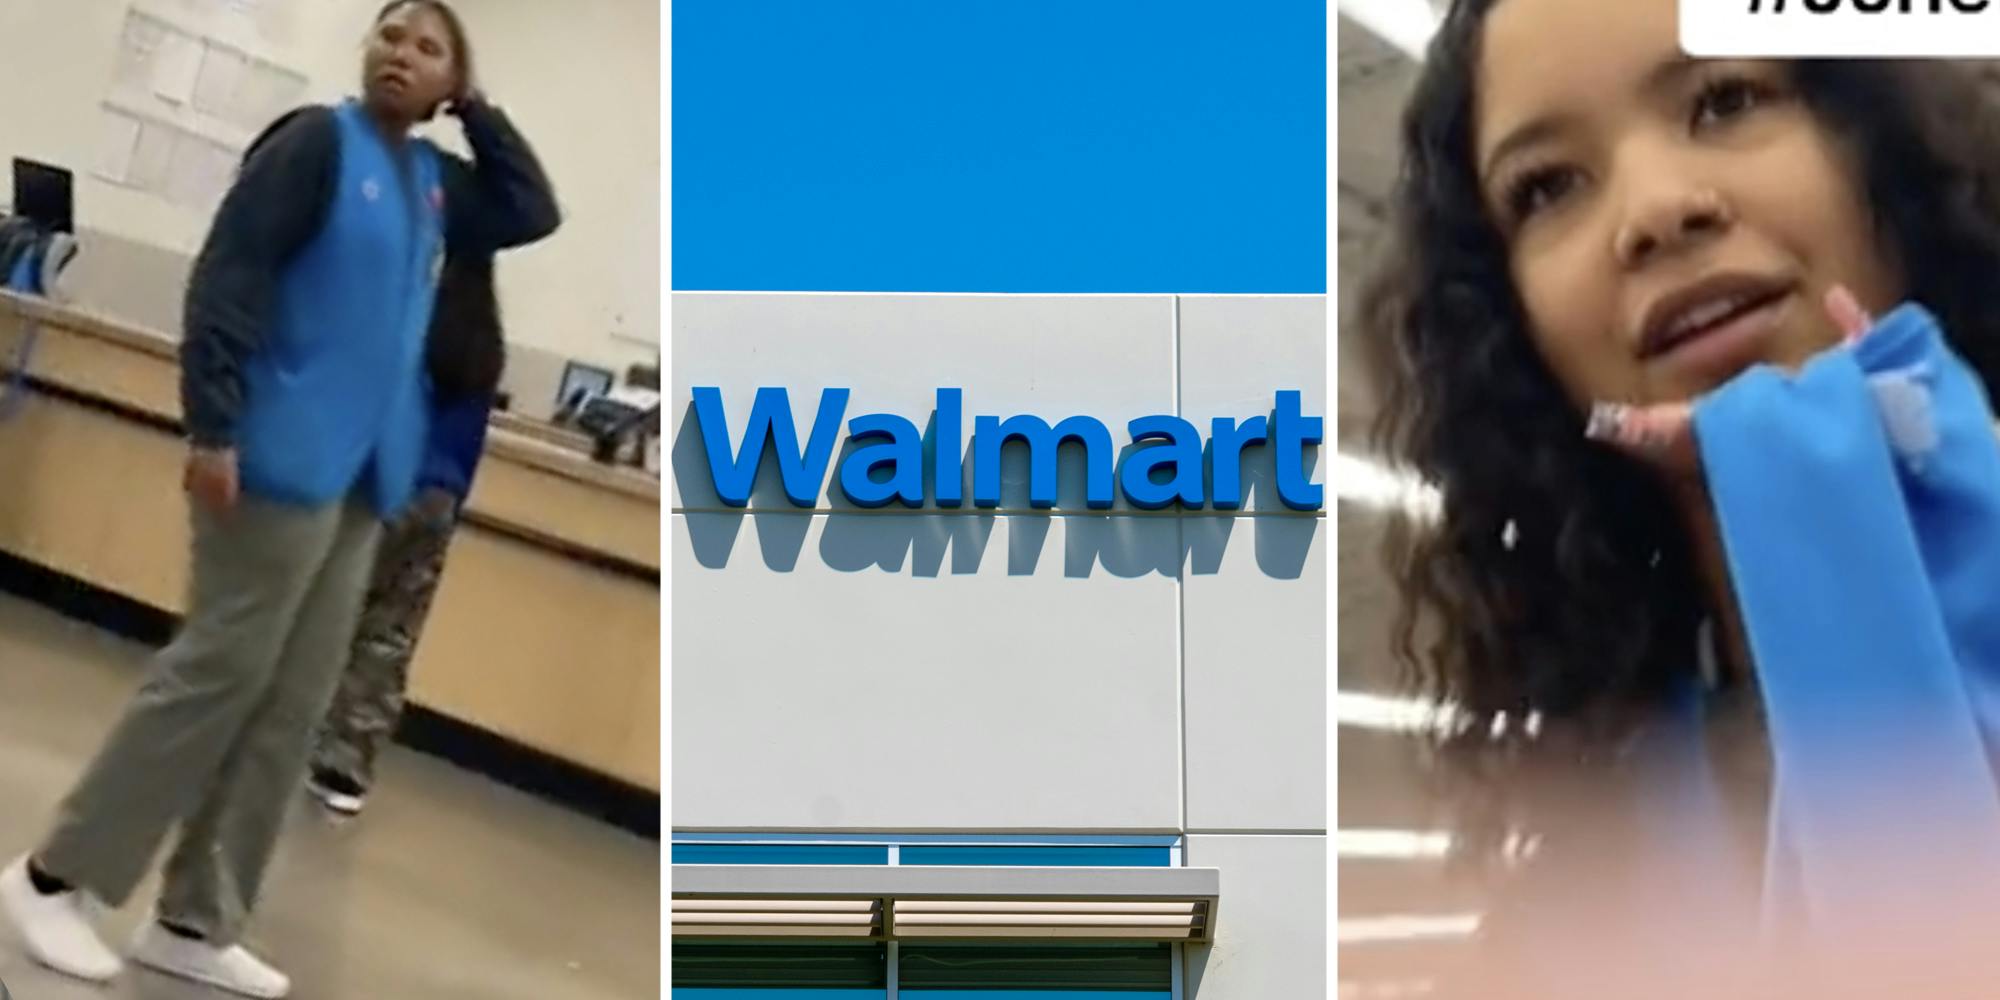 Walmart worker(l), Walmart(c), Different walmart worker(r)